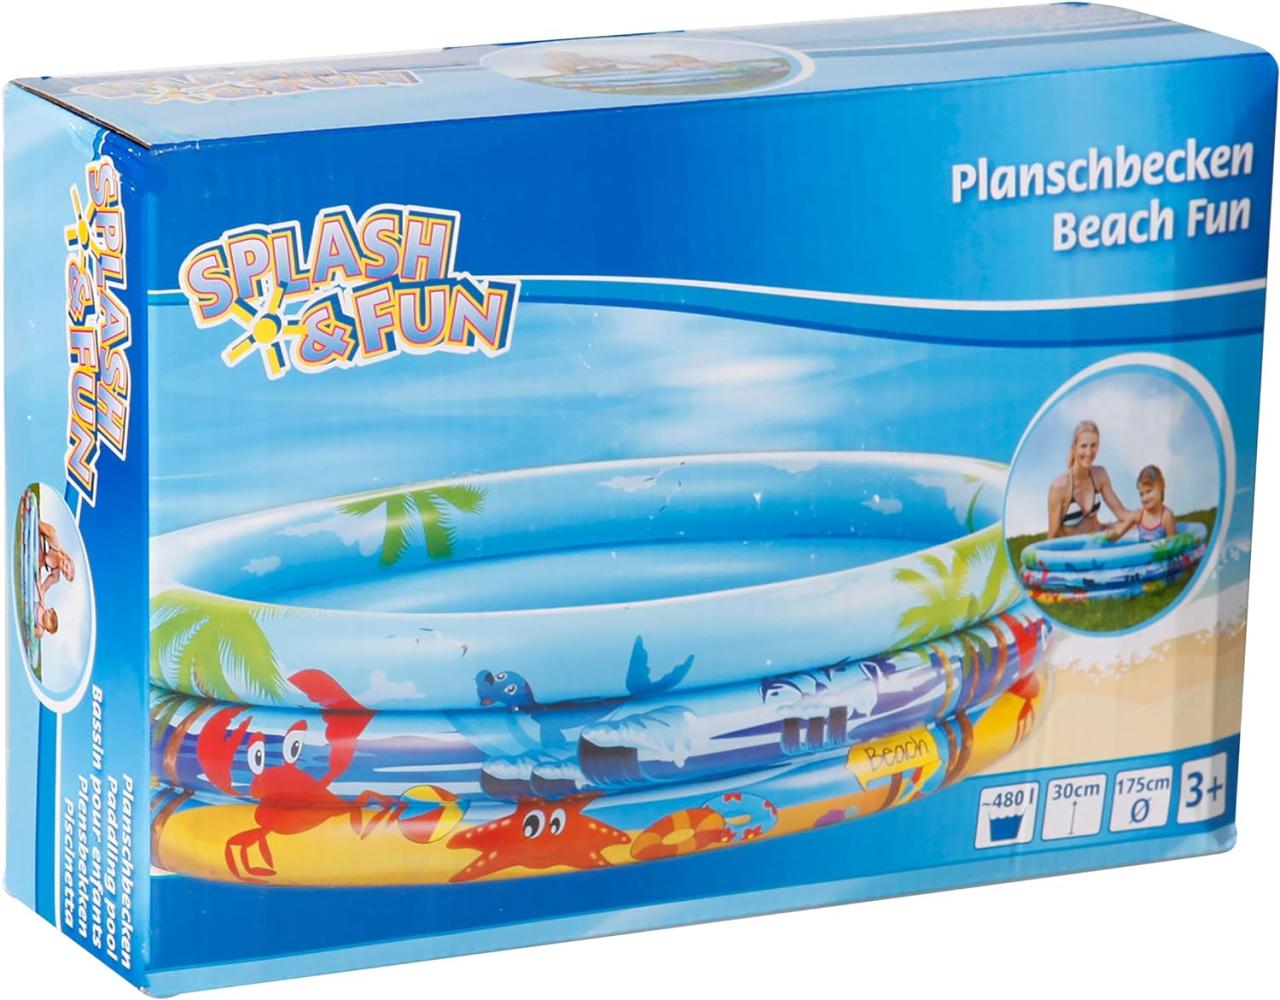 Splash & Fun Planschbecken Beach 175 cm Bild 1